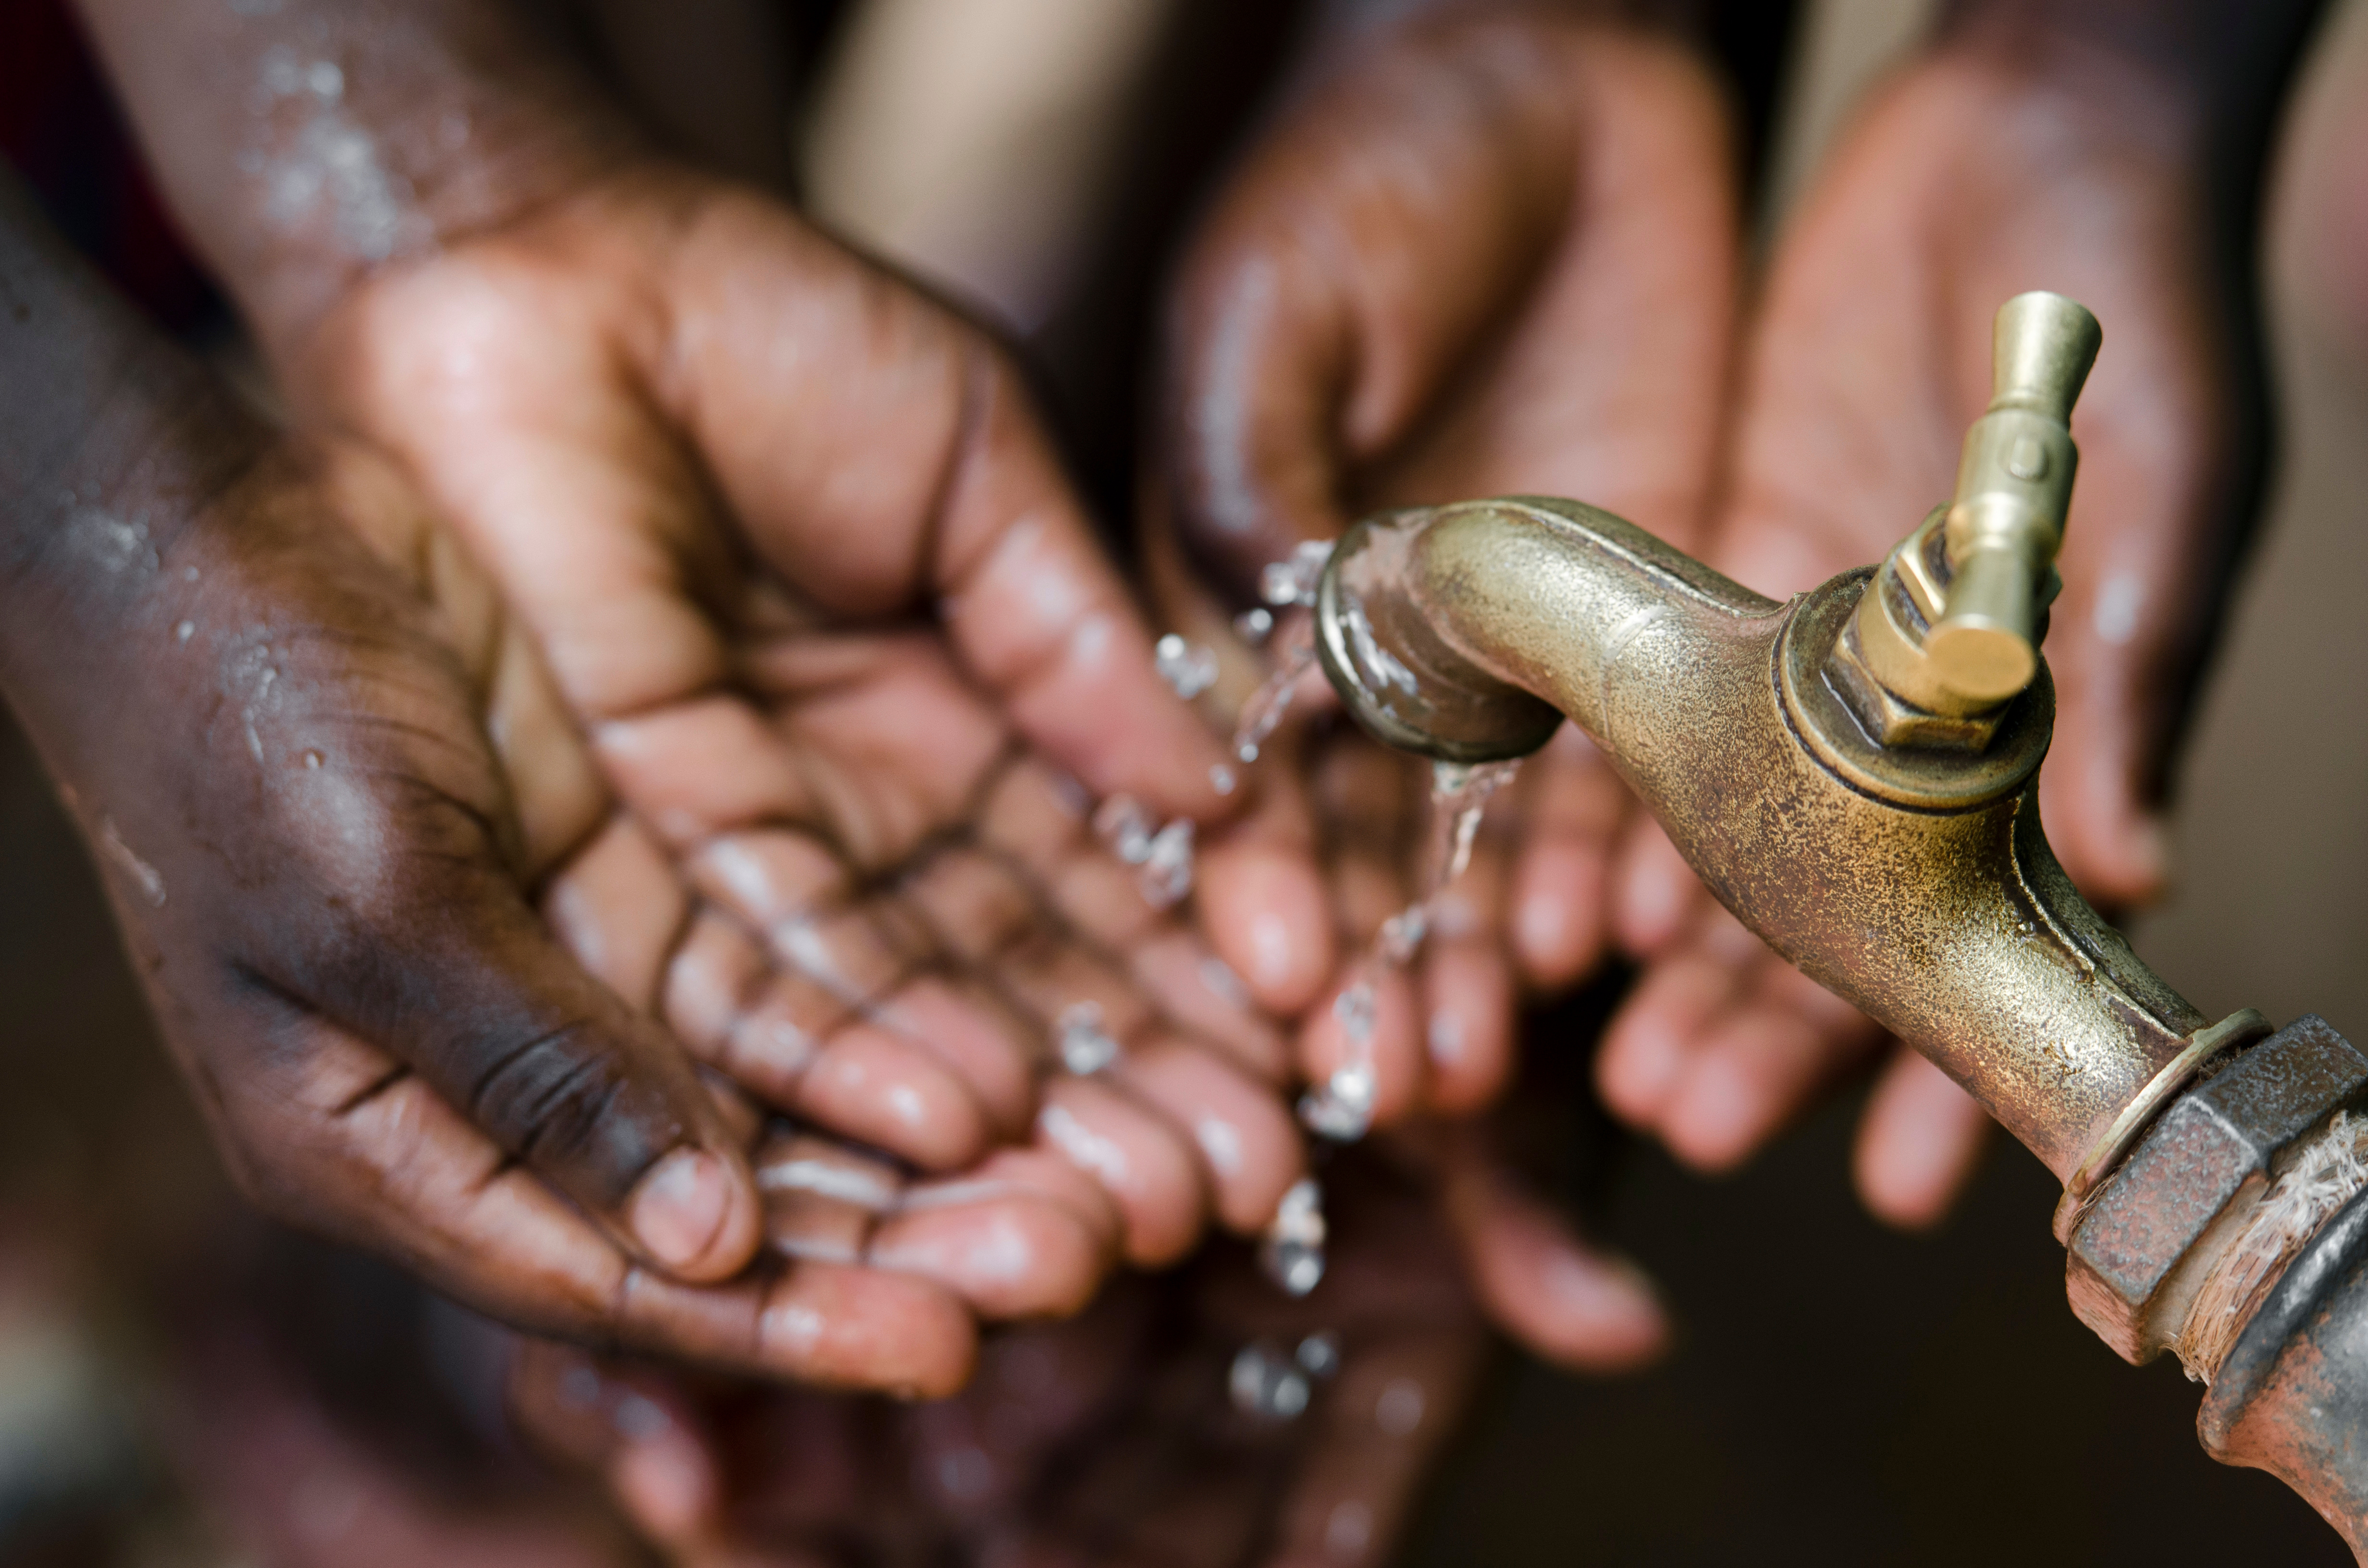 La pandémie de choléra est étroitement liée à l’absence d’eau potable et d’assainissement dans certains pays. © Riccardo Niels Mayer, Adobe Stock